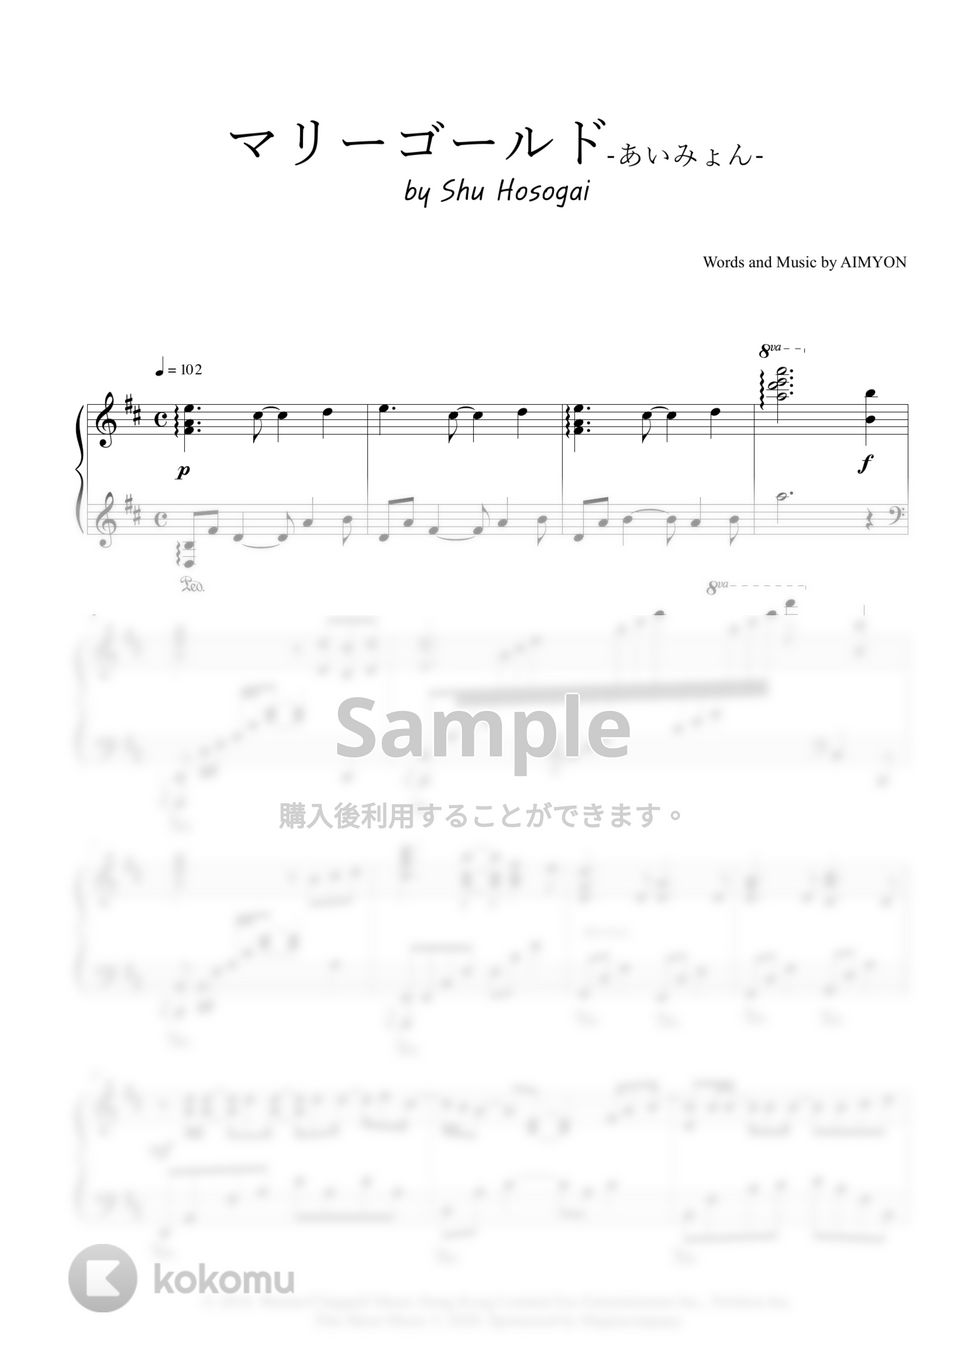 あいみょん - マリーゴールド (ピアノソロ豪華アレンジ) by 細貝柊